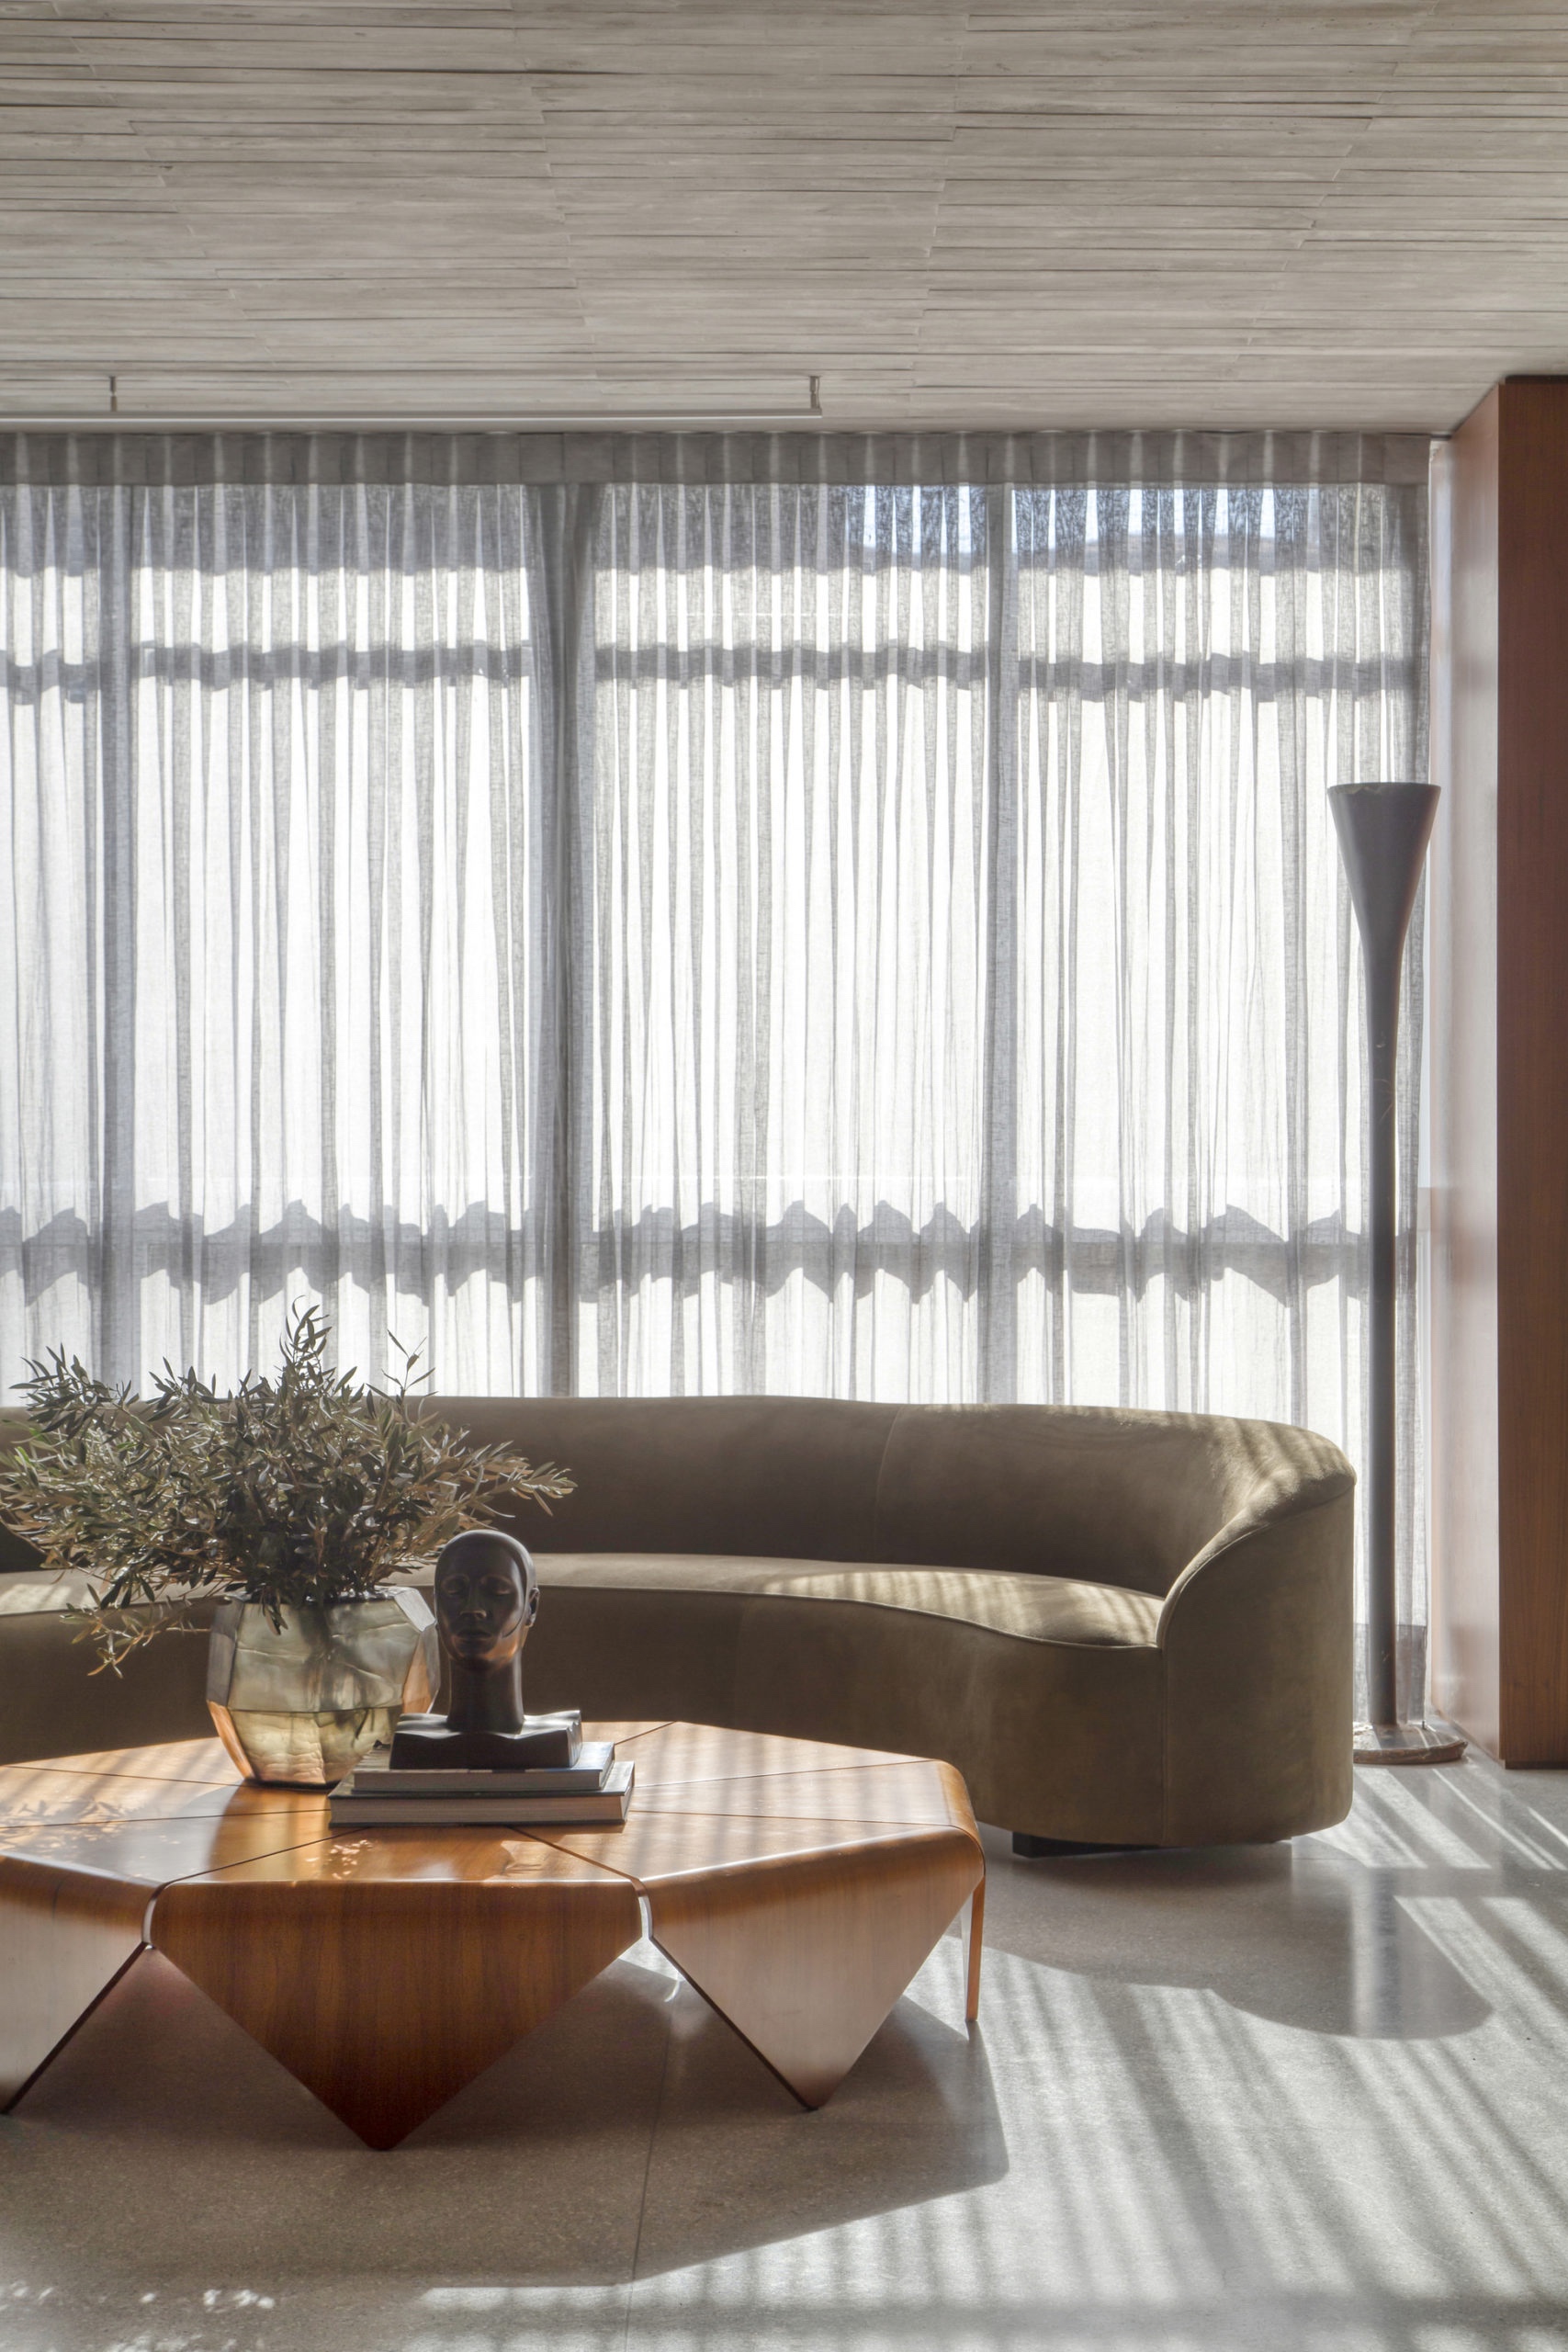 Бетон и дерево: эффектный минималистичный интерьер квартиры, вдохновленый эстетикой модернизма